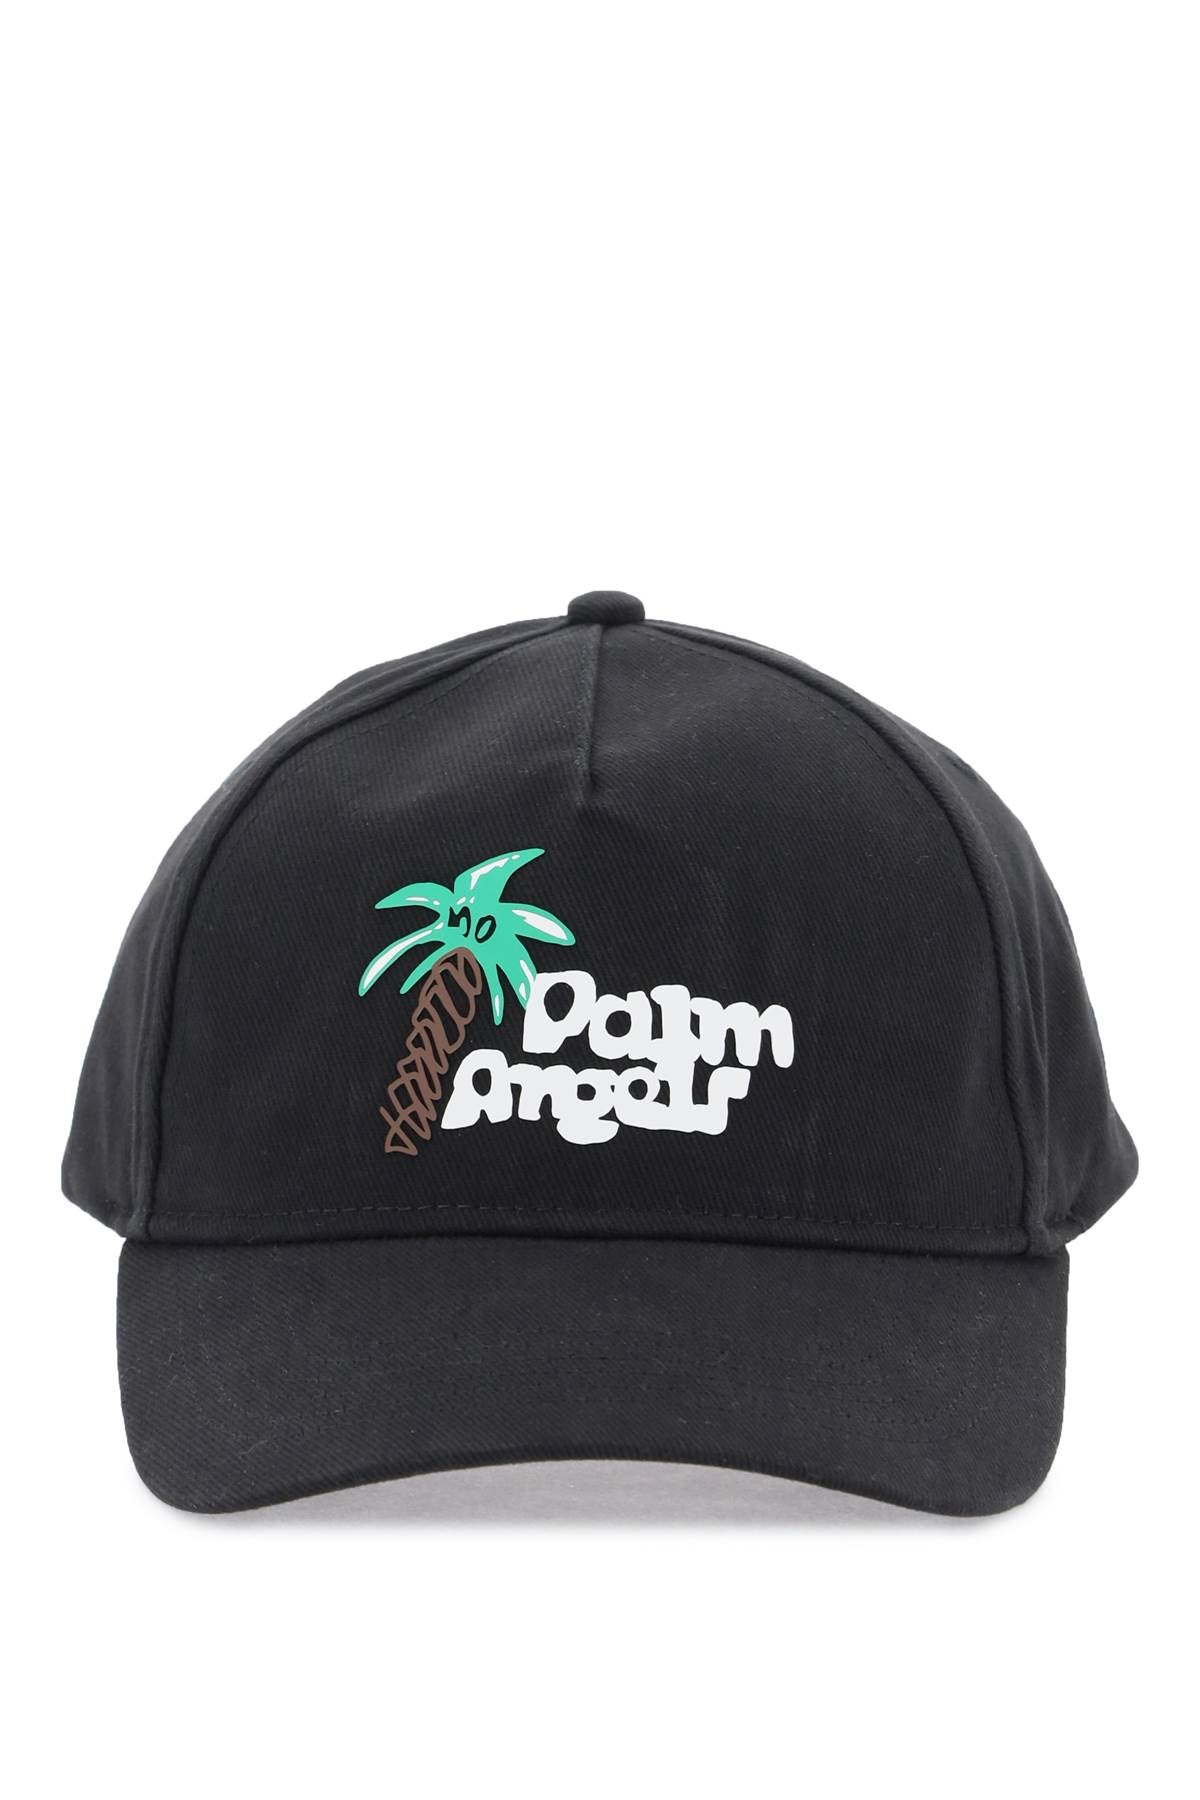 Palm angels sketchy baseball cap-0